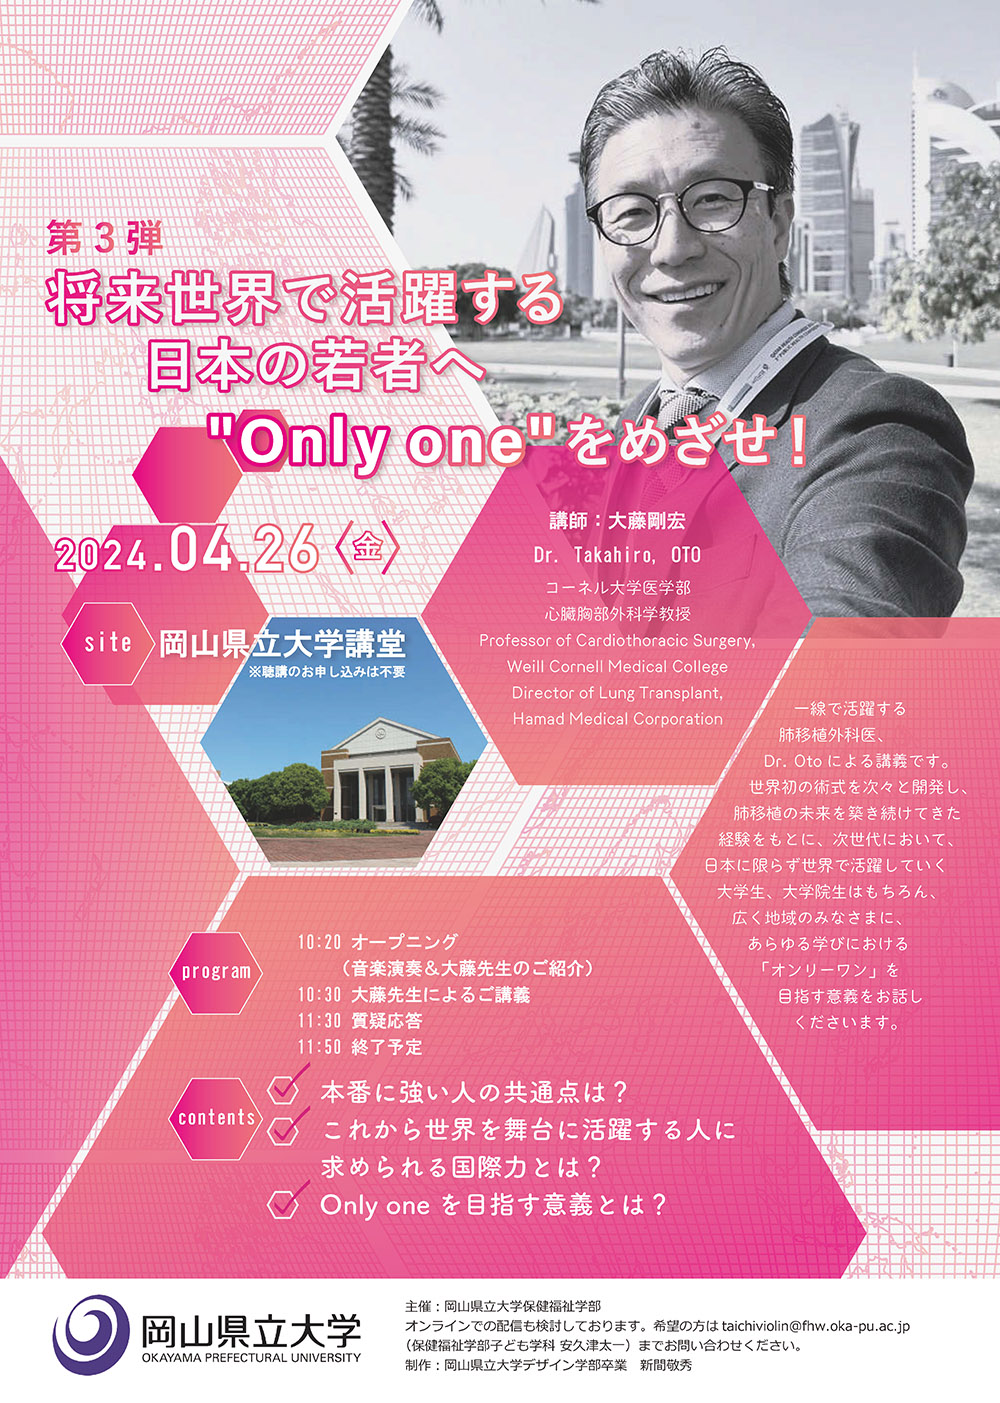 本学客員教授 大藤剛宏氏（肺移植外科医）による講演会を開催します